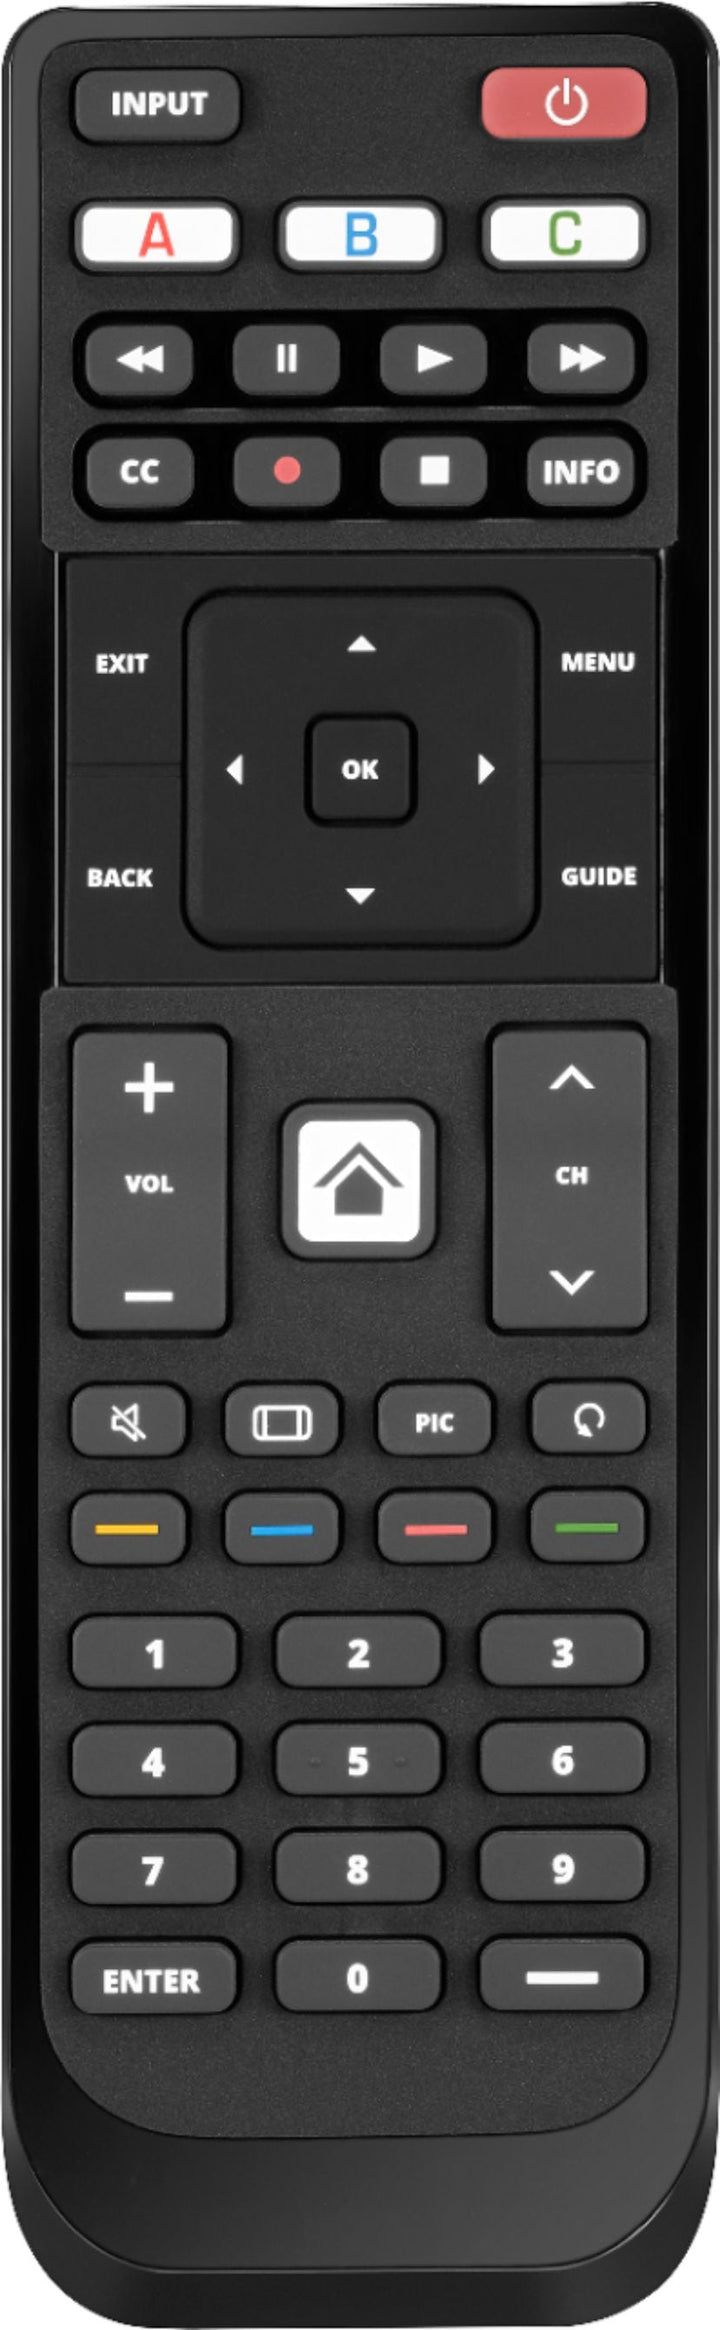 Insignia™ - Replacement Remote for Vizio TVs - Black_0